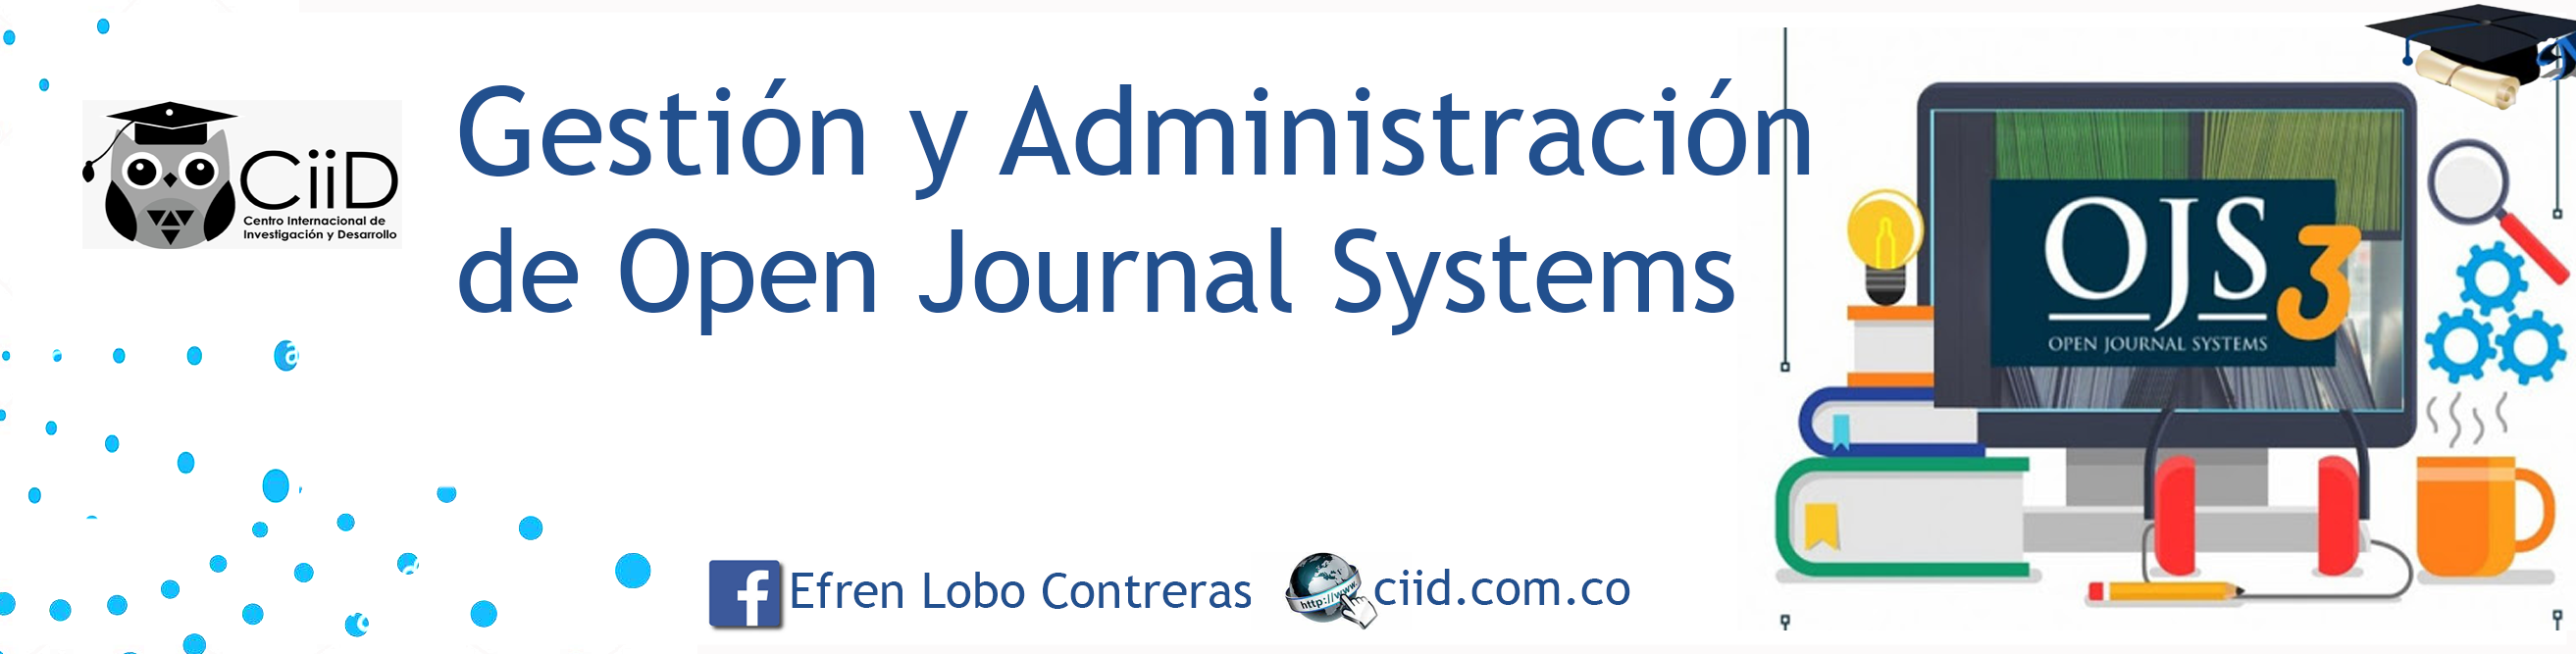 Gestión y Administración de Open Journal Systems